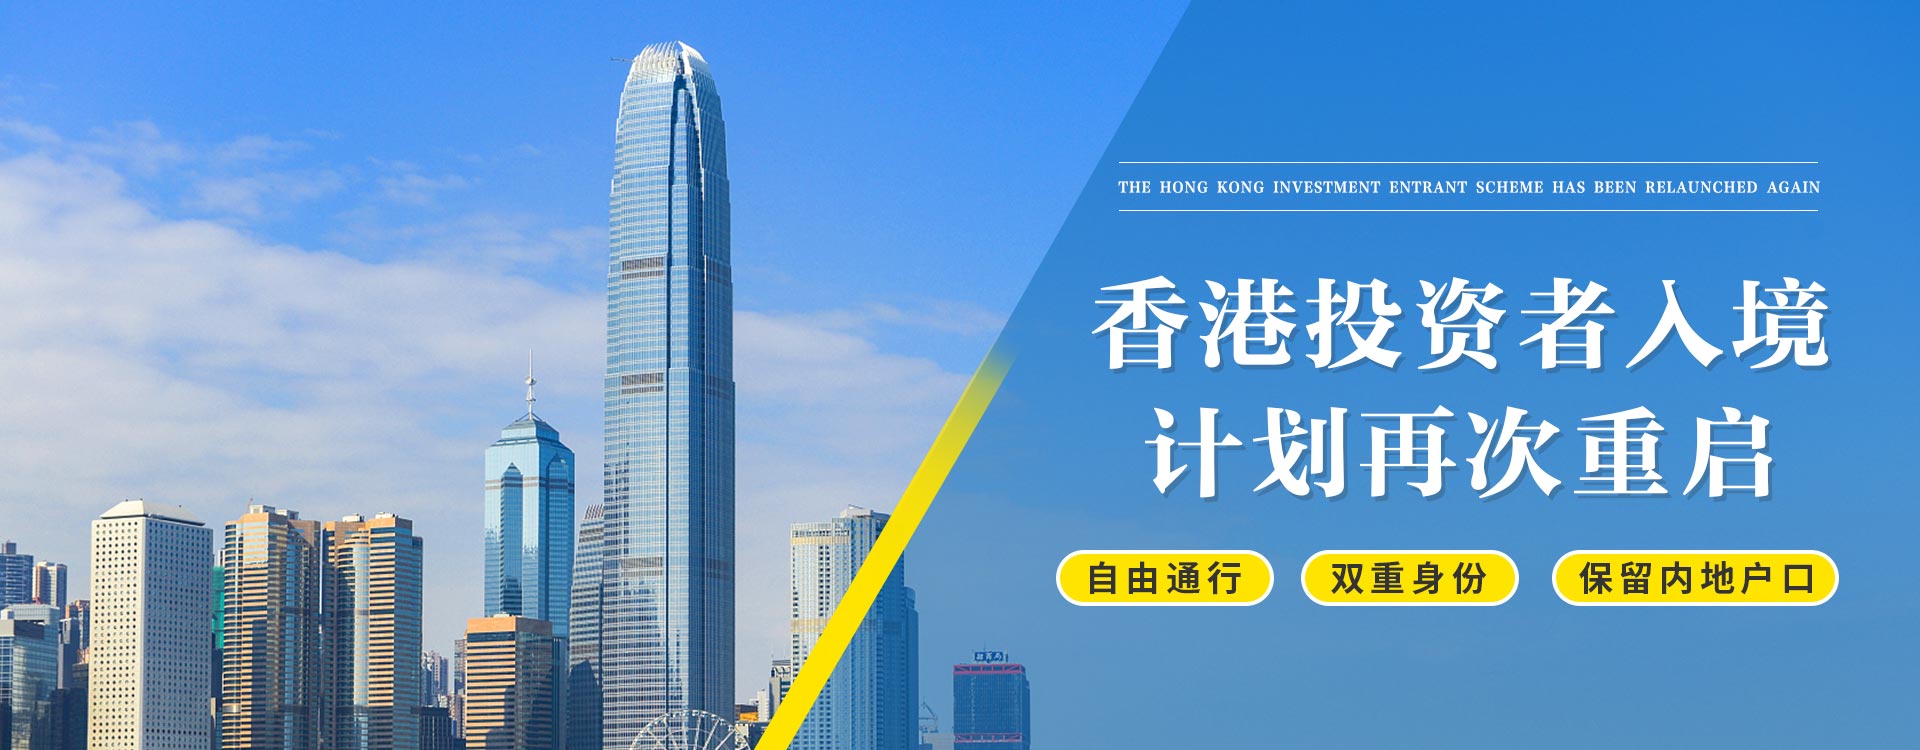 香港投资者计划再次重启